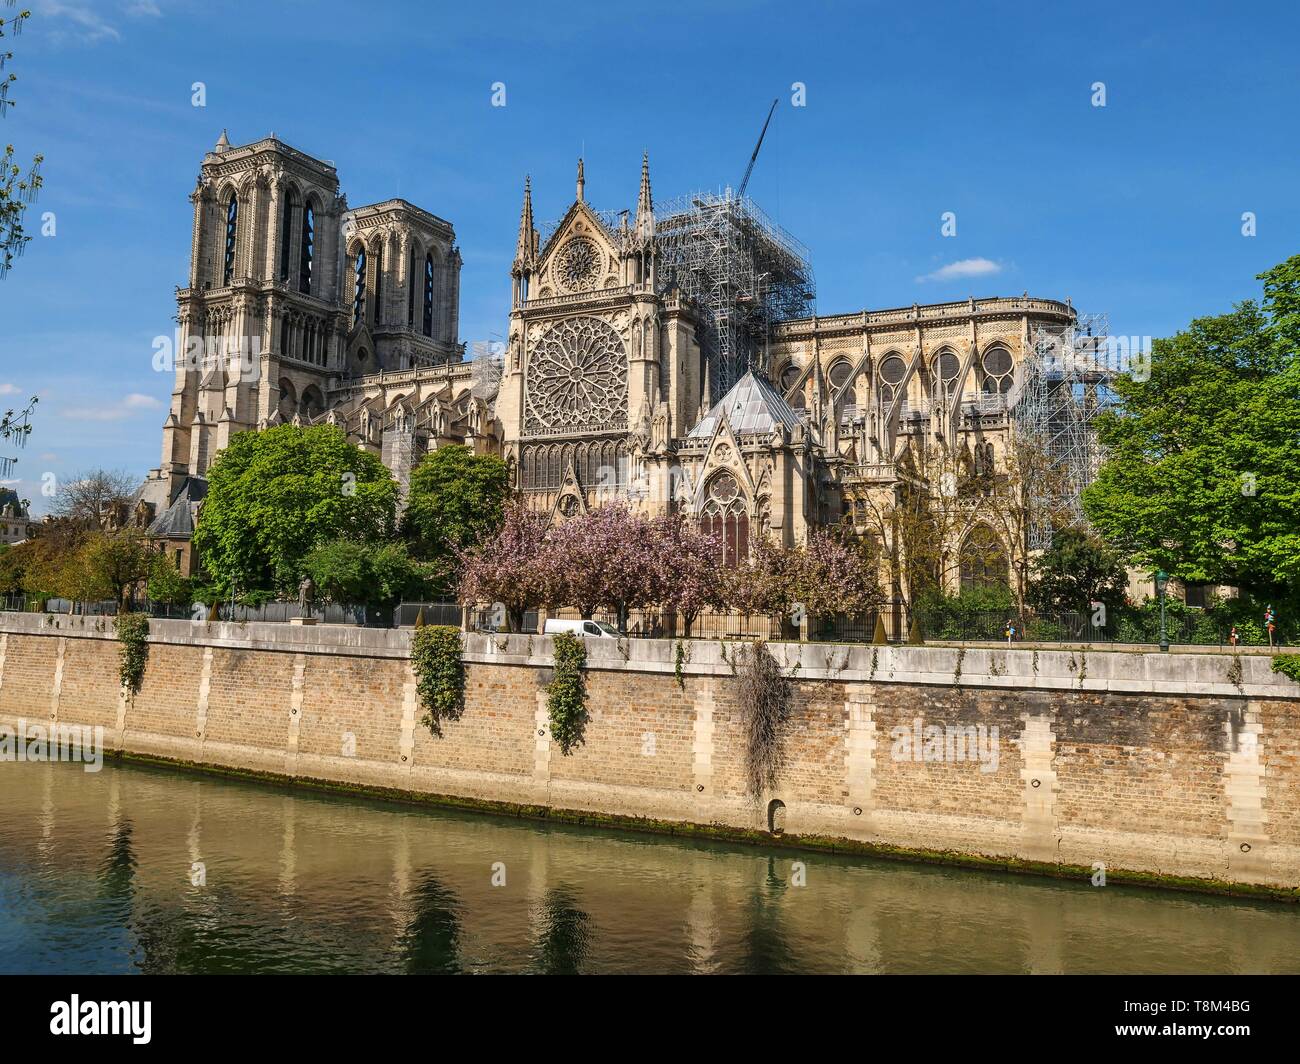 Frankreich, Paris (75), Weltkulturerbe der UNESCO, die Kathedrale Notre Dame, April 17, 2019, 2 Tage nach dem verheerenden Feuer, das den gesamten Frame ravaged Stockfoto